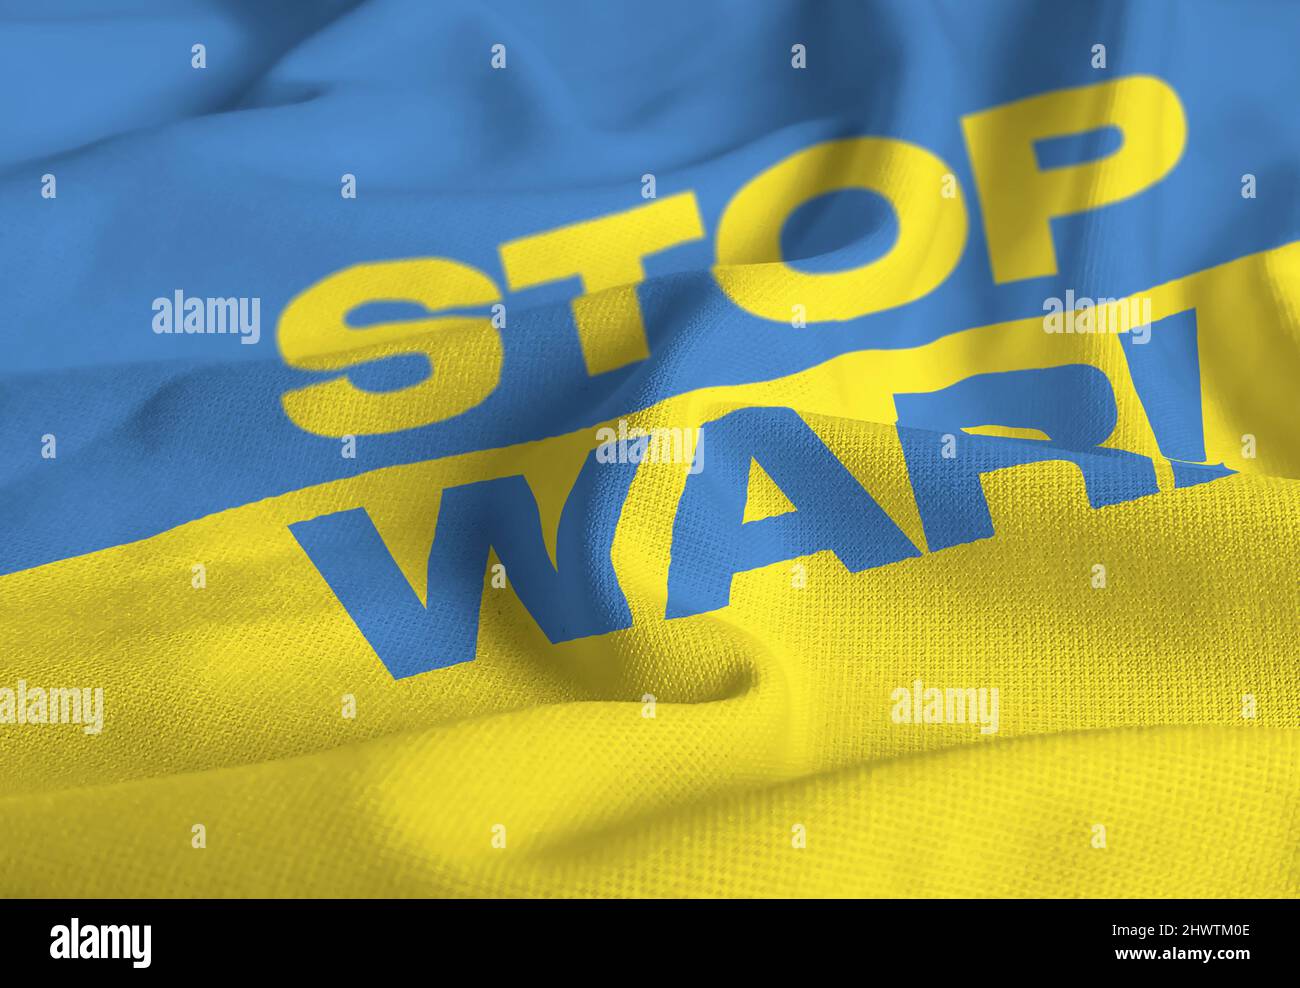 Detail der Nationalflagge der Ukraine mit dem Text "Krieg der Spitze" . Demokratie und Politik. Patriotismus. Selektiver Fokus Stockfoto